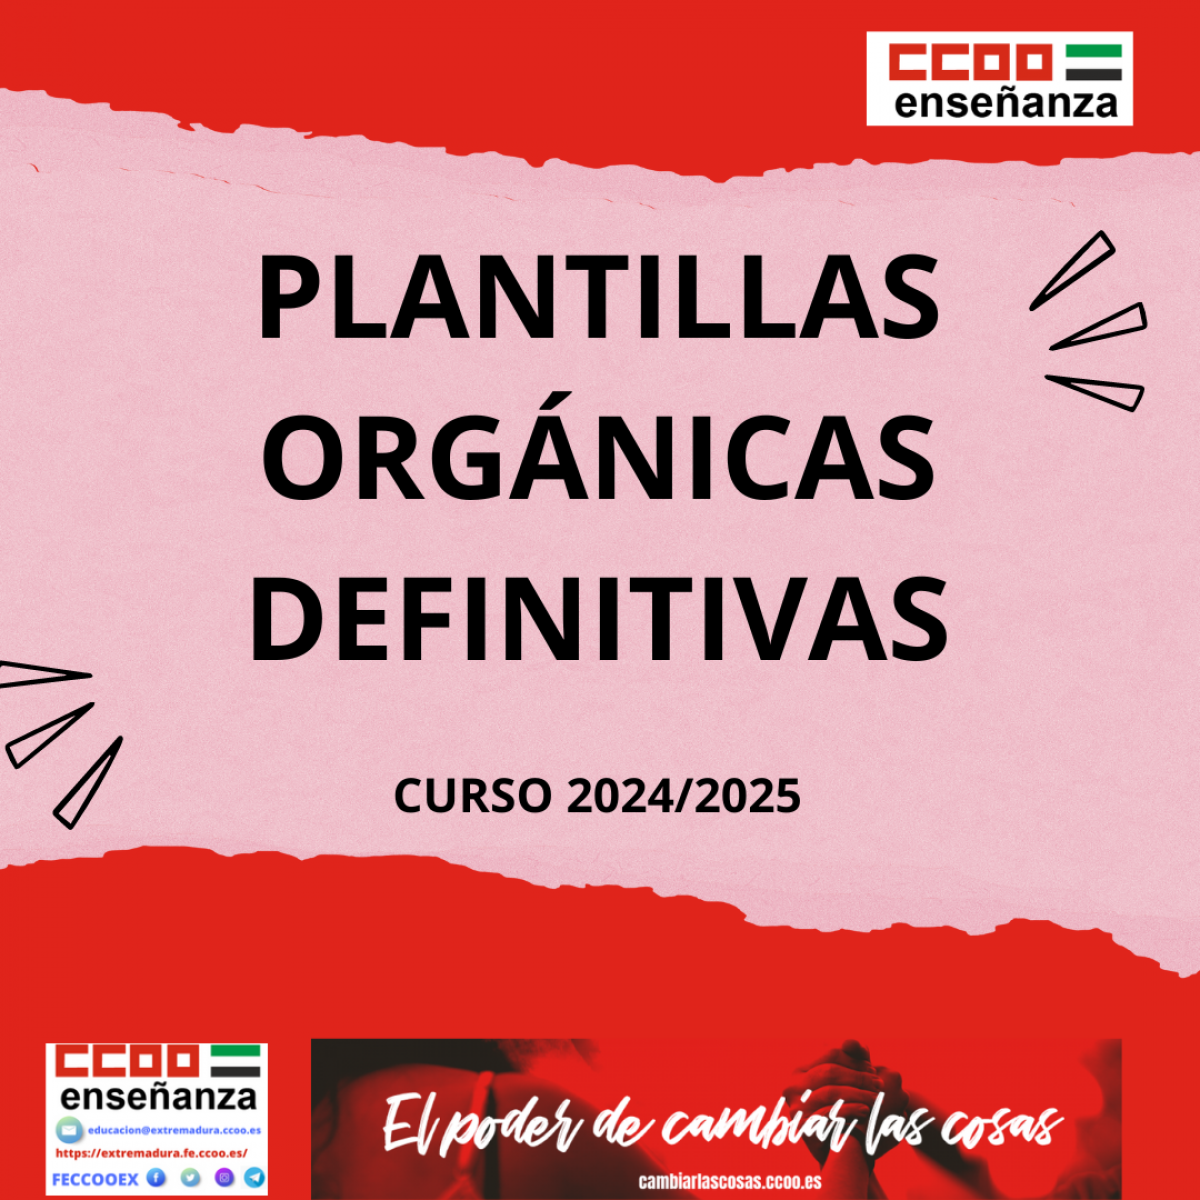 Plantilla orgnica definitiva curso 2024-2025